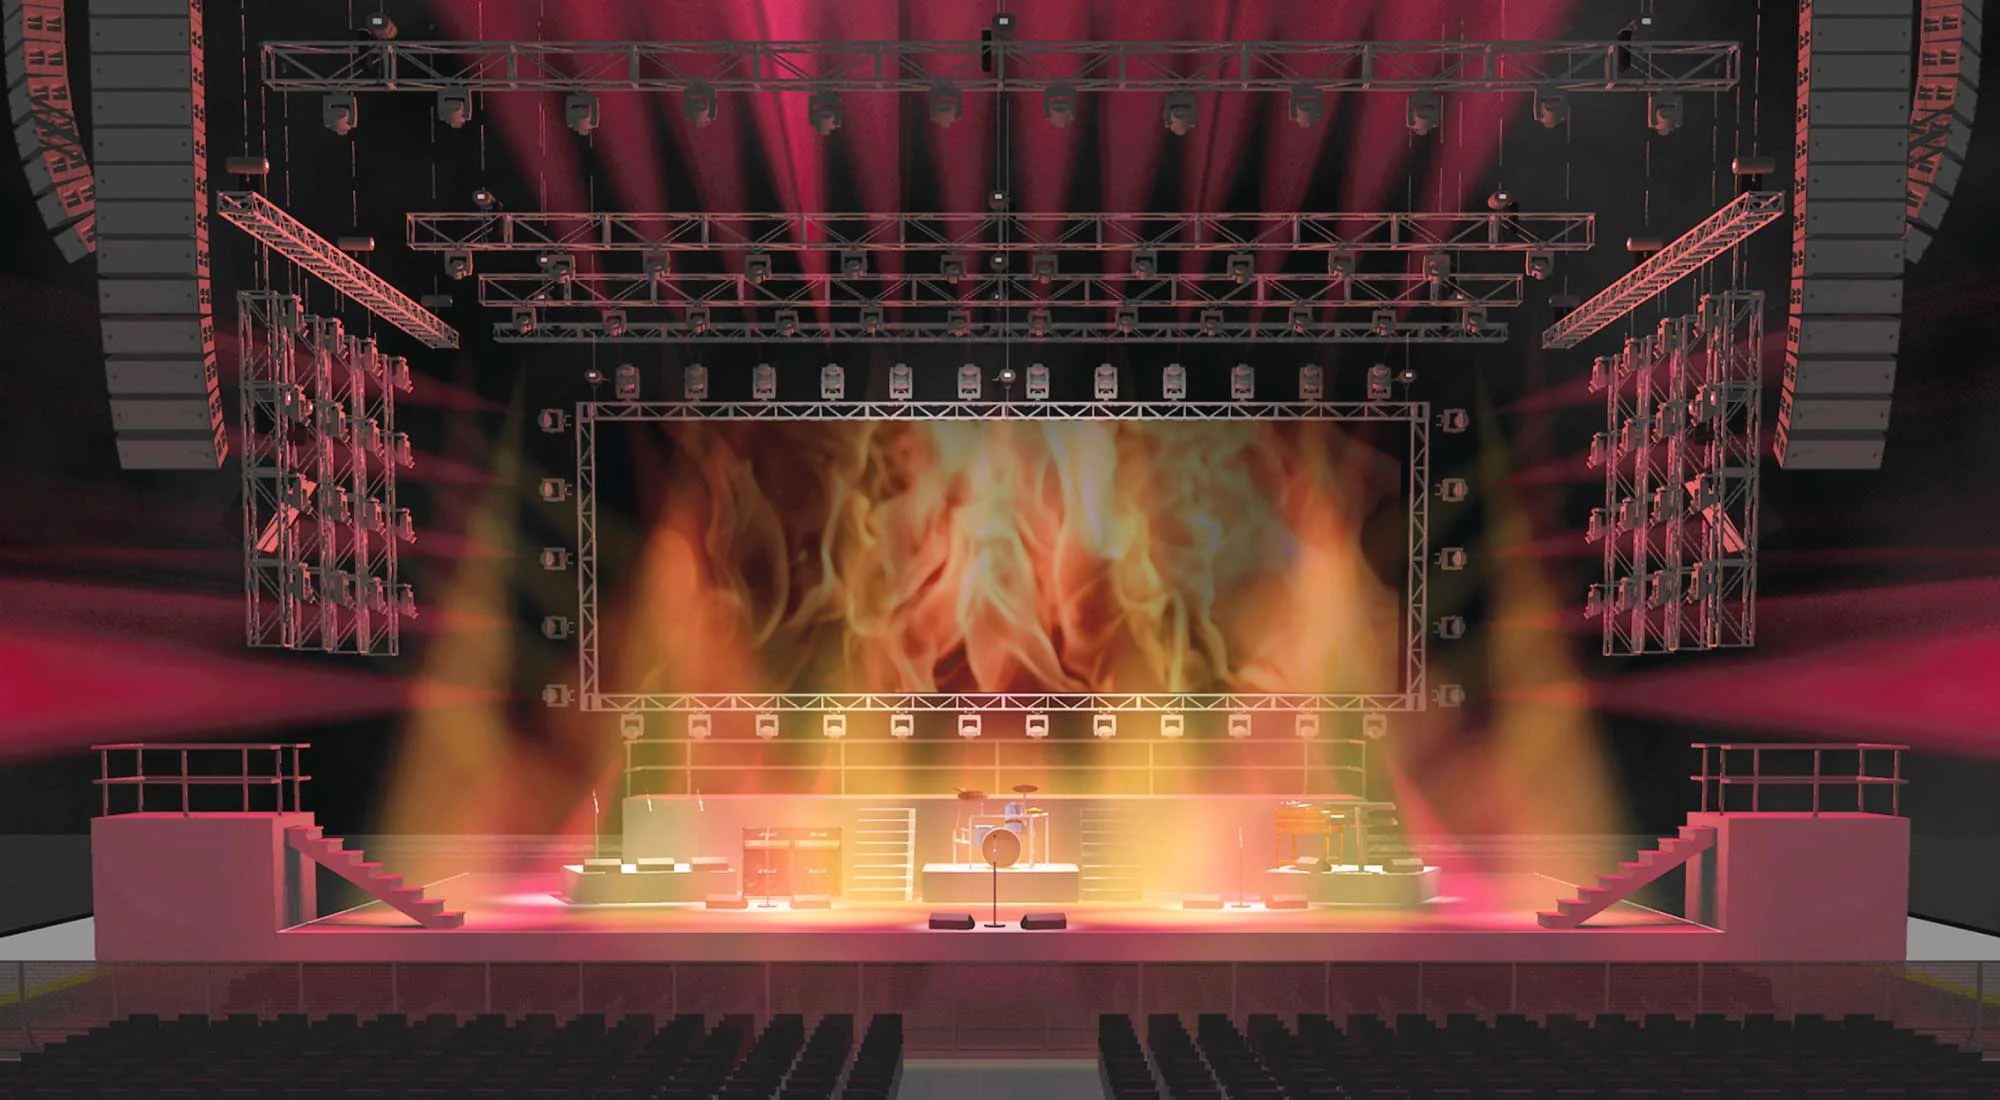 spot_concert-stage-rendering_slider_3